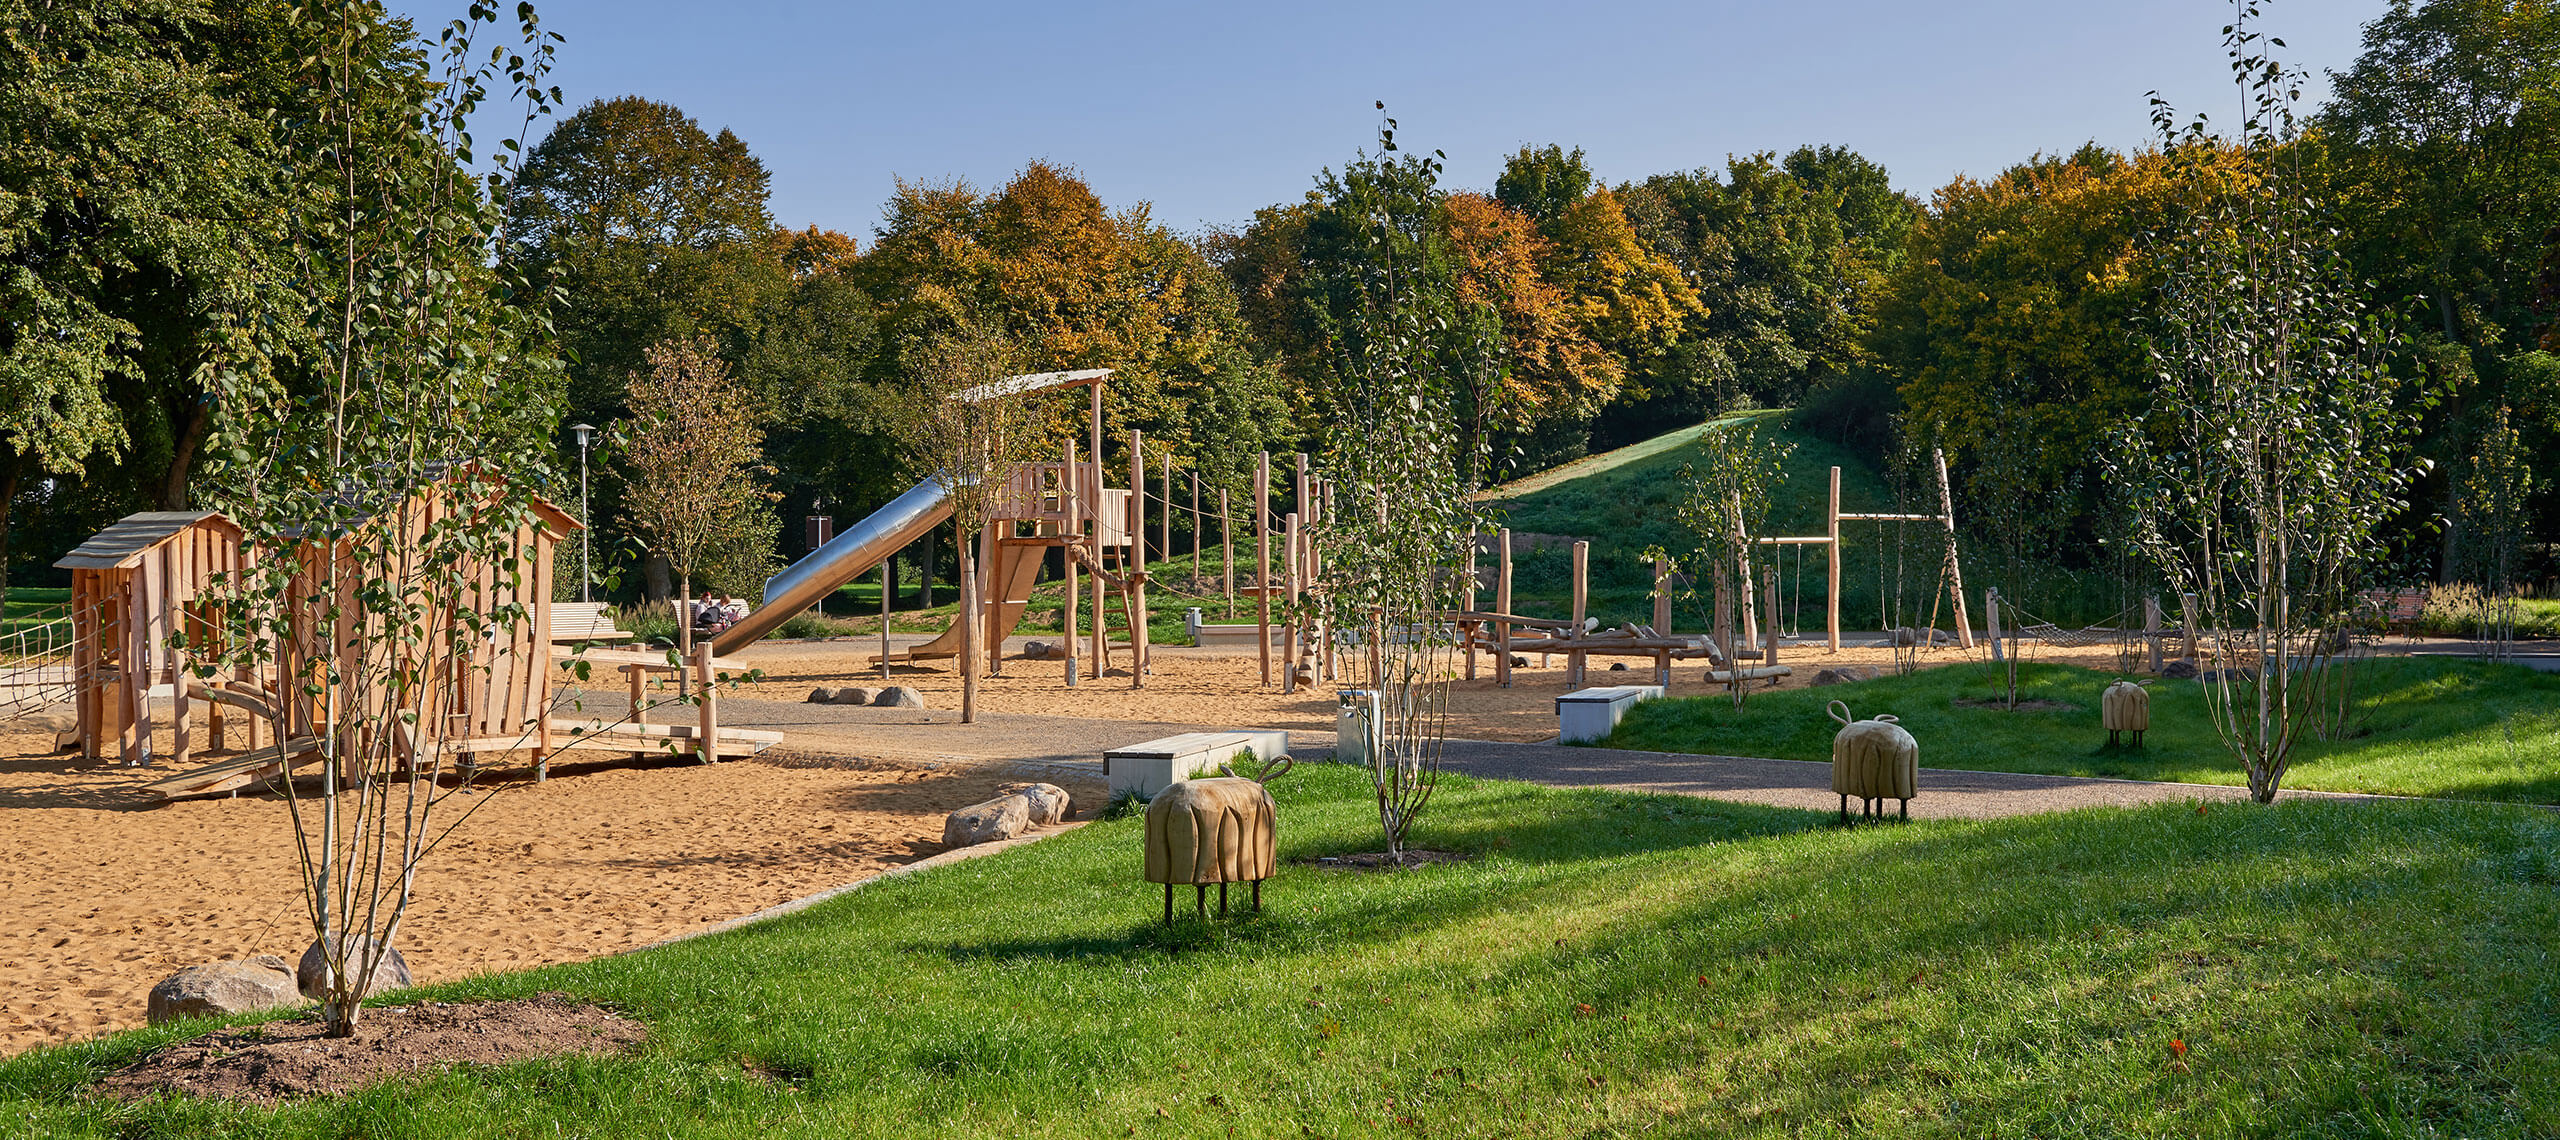 Spielplatz Park Holzbenden - Blick in den Spielplatz